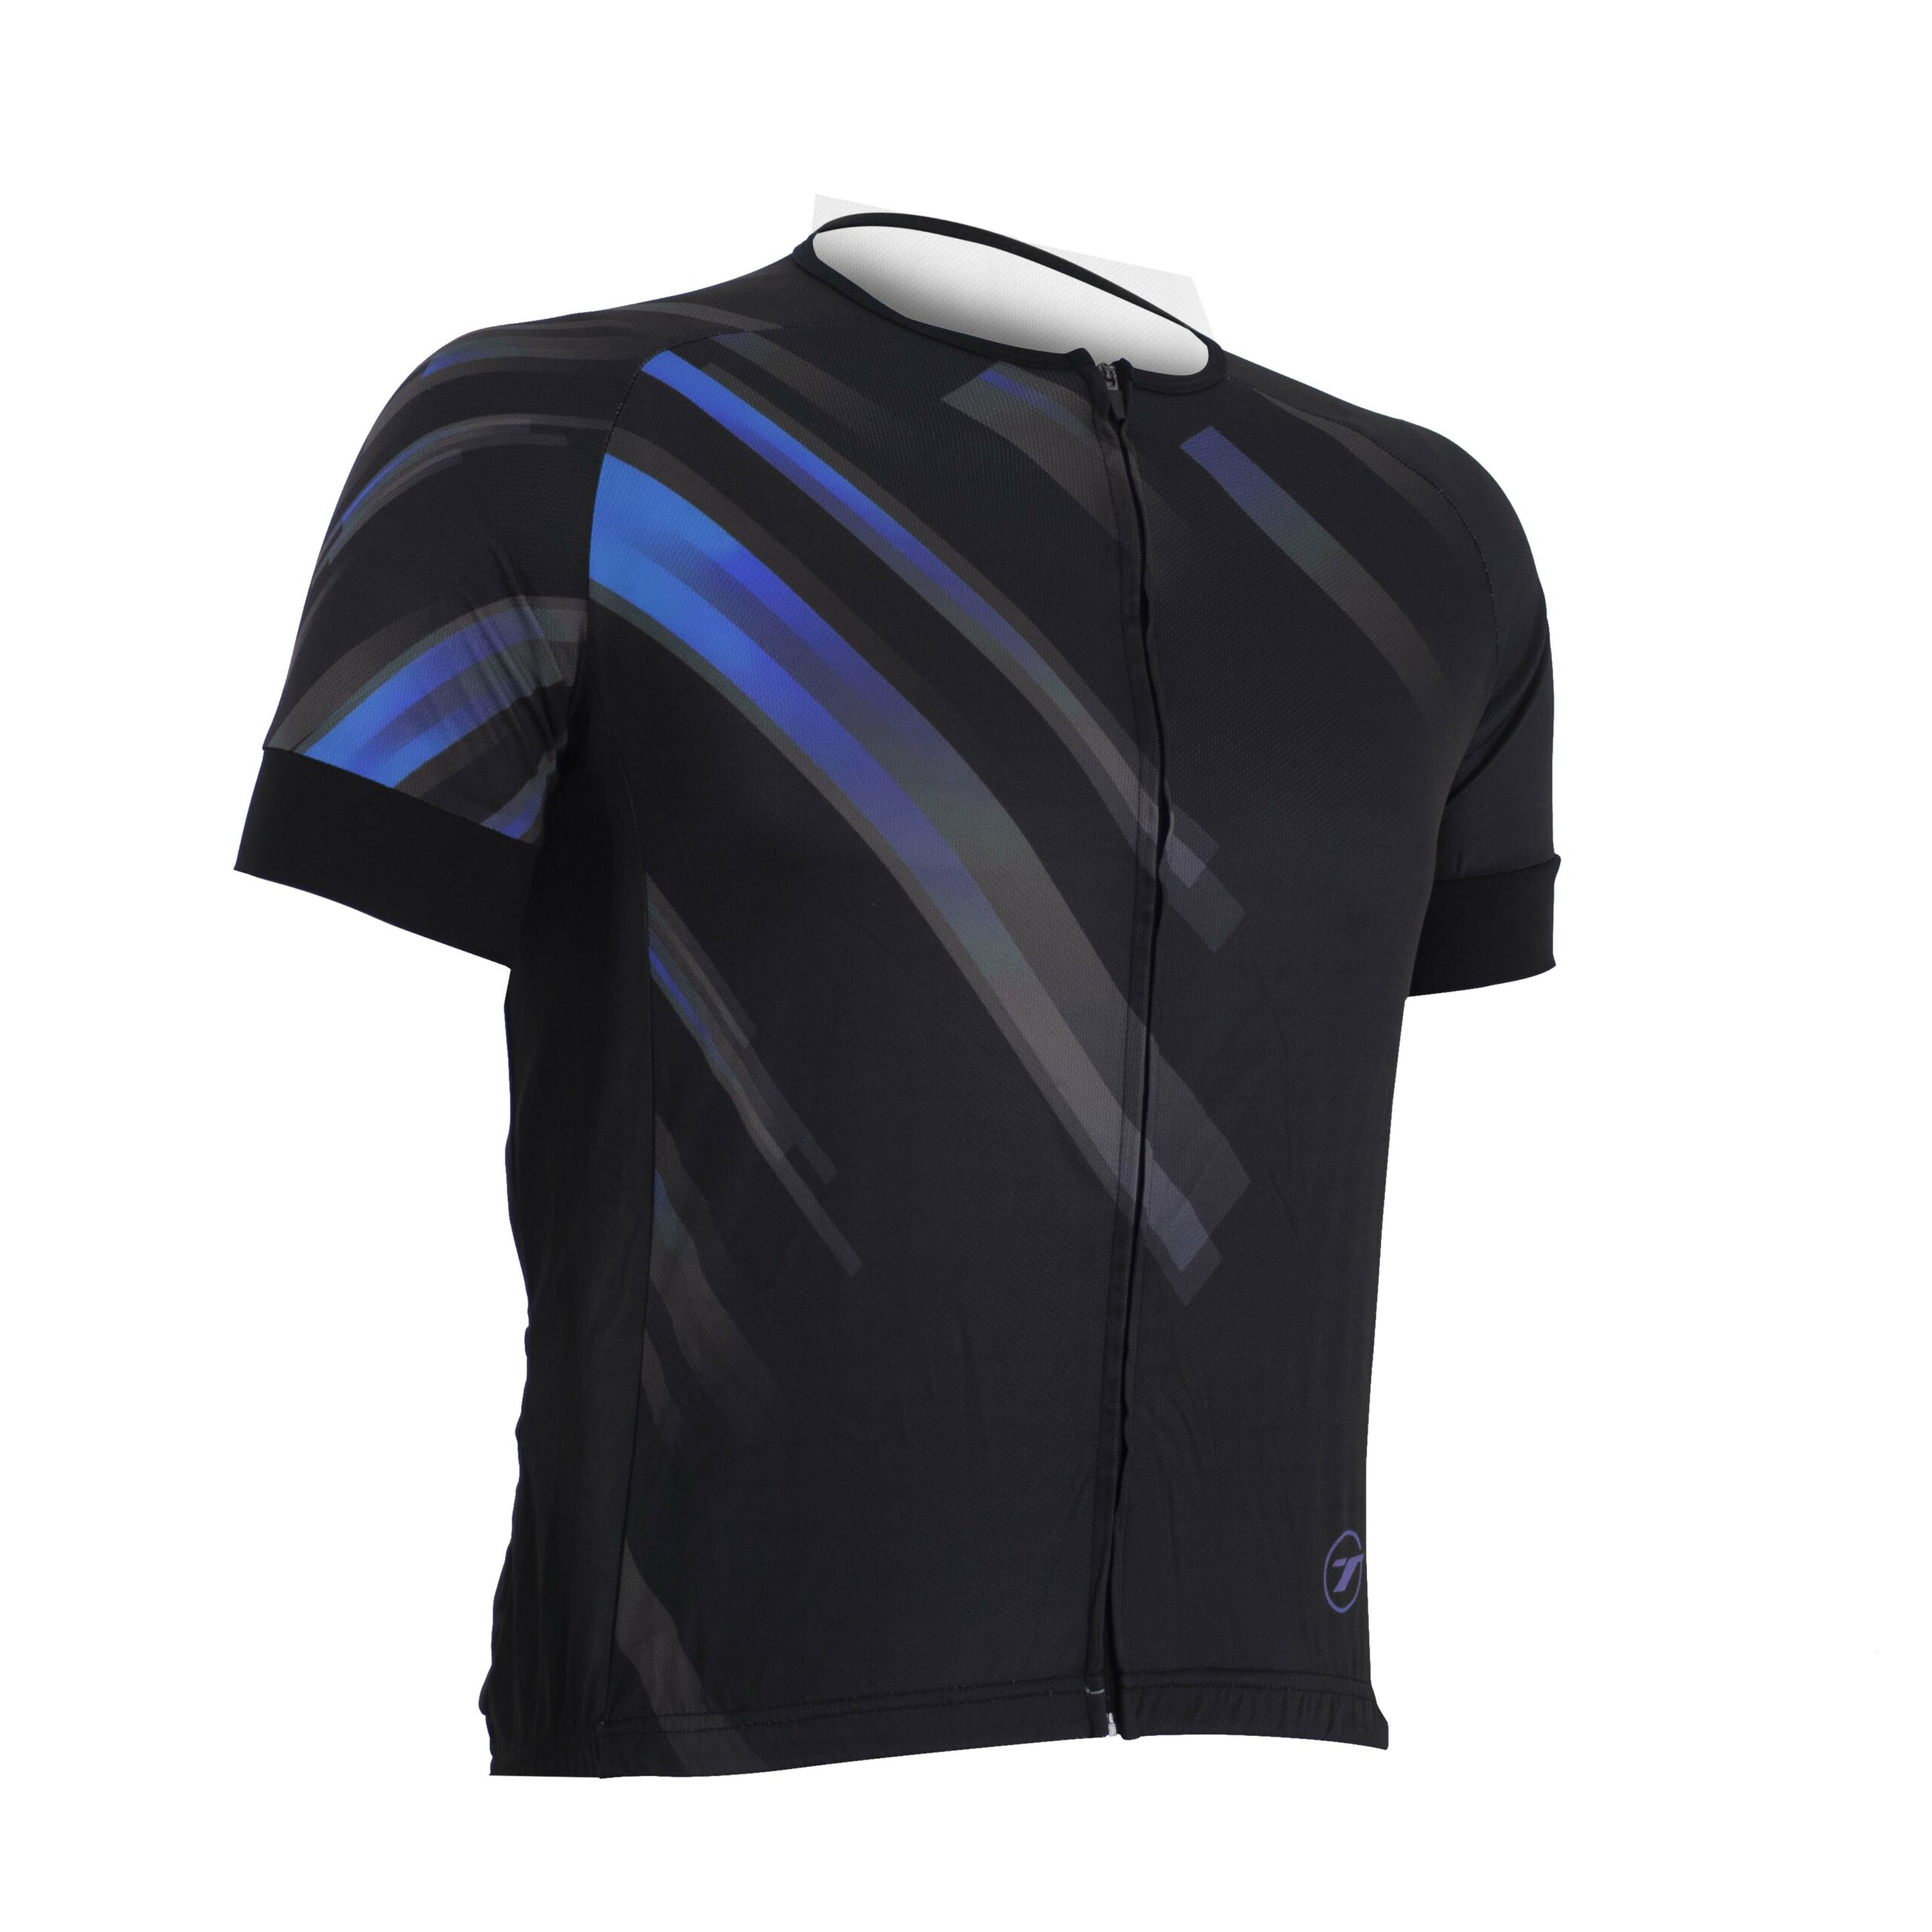 Camisa para ciclismo SUNNY | RIDE LINE - Preto/Azul, P